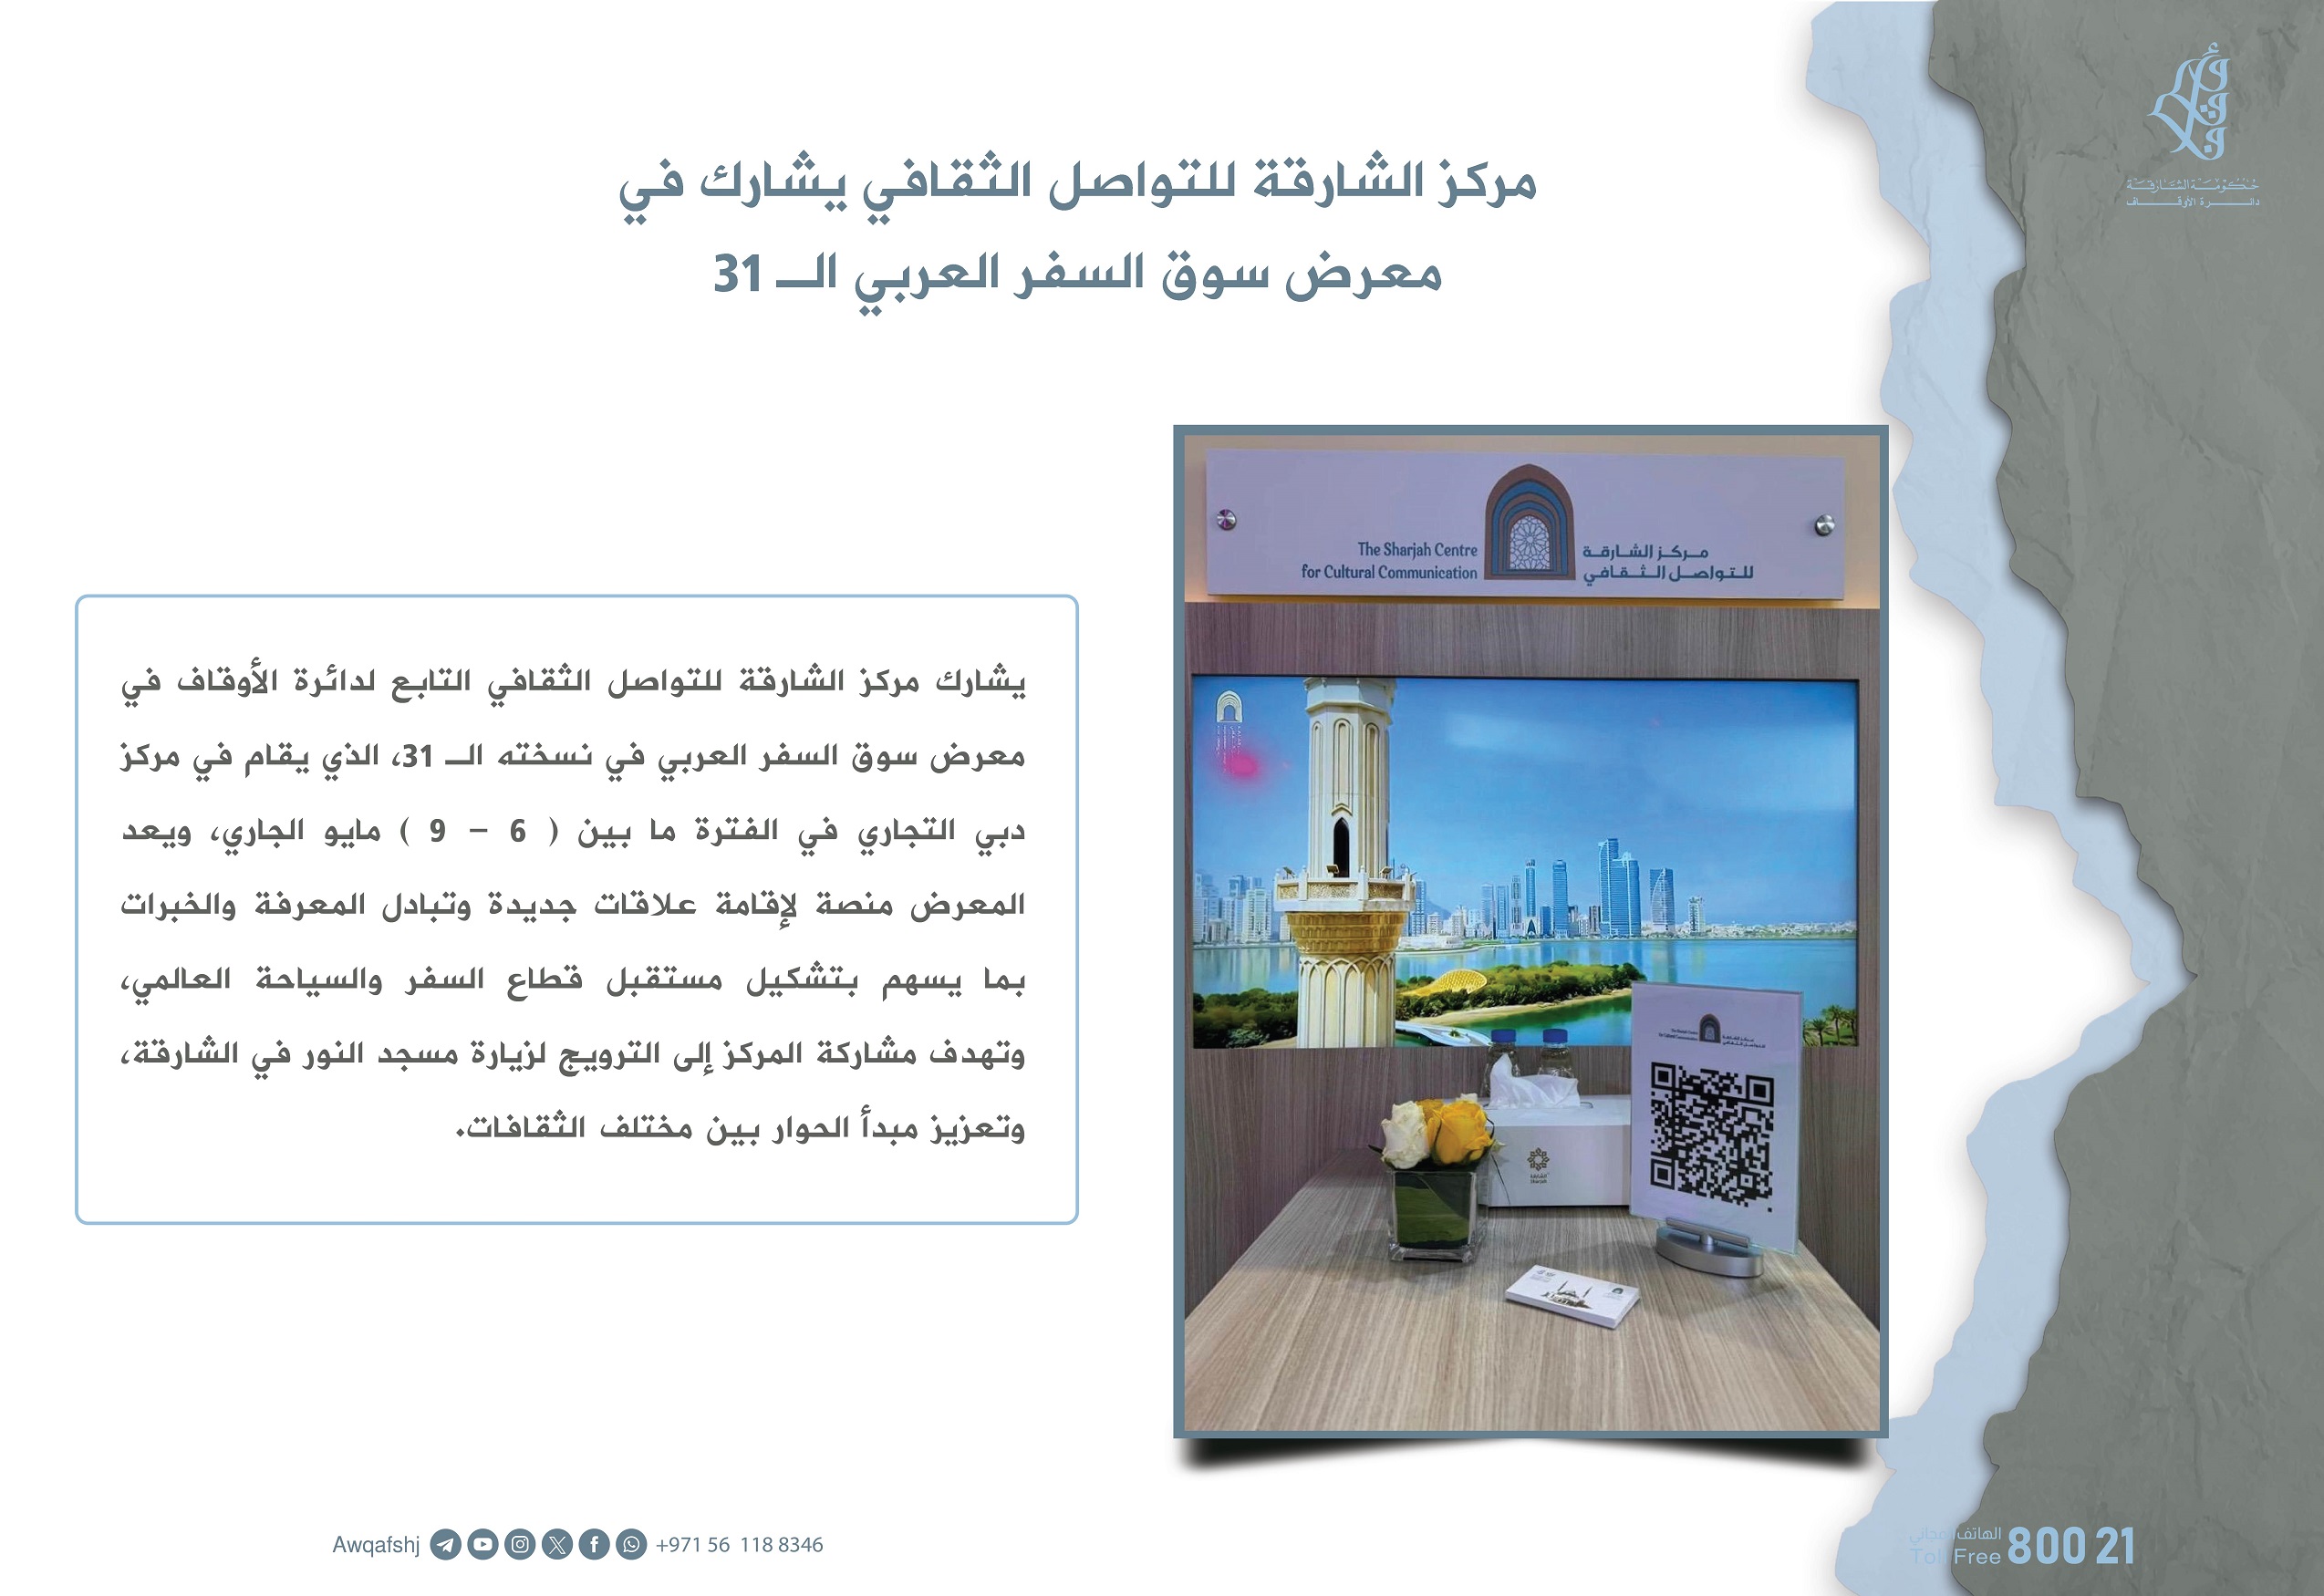 مركز الشارقة للتواصل الثقافي يشارك في معرض سوق السفر العربي الـ31